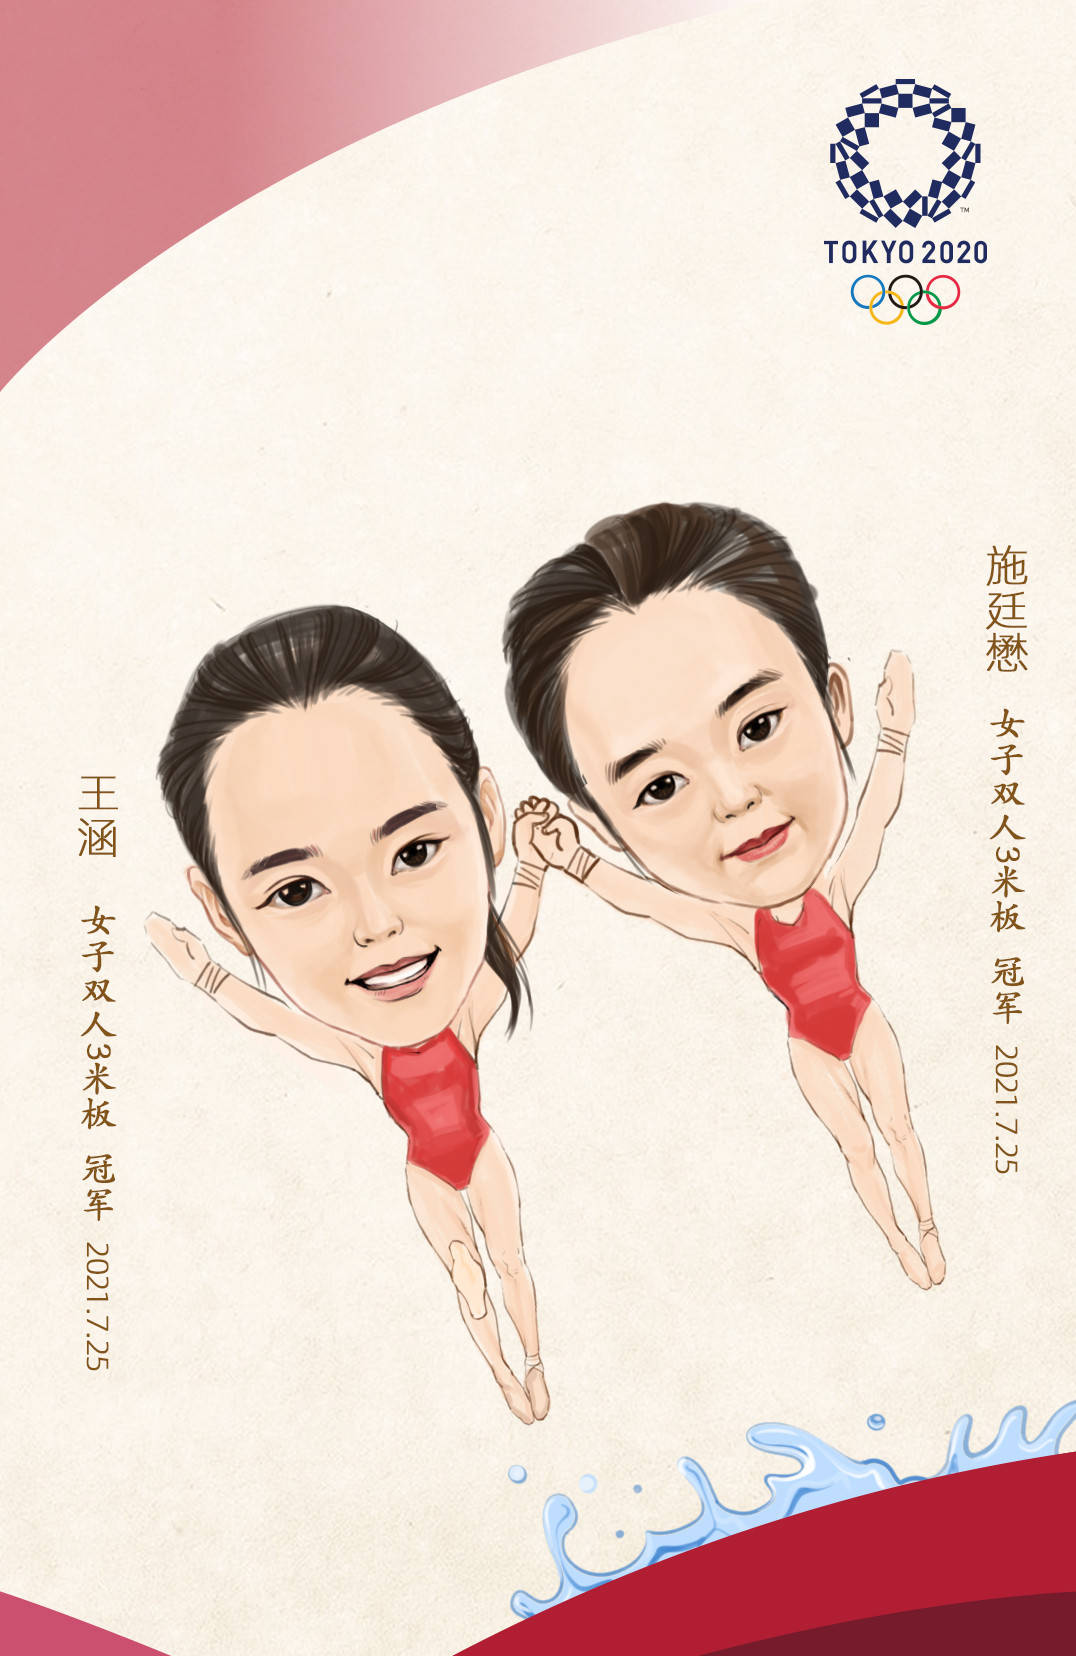 爱济南手绘祝贺中国第四金_奥运会